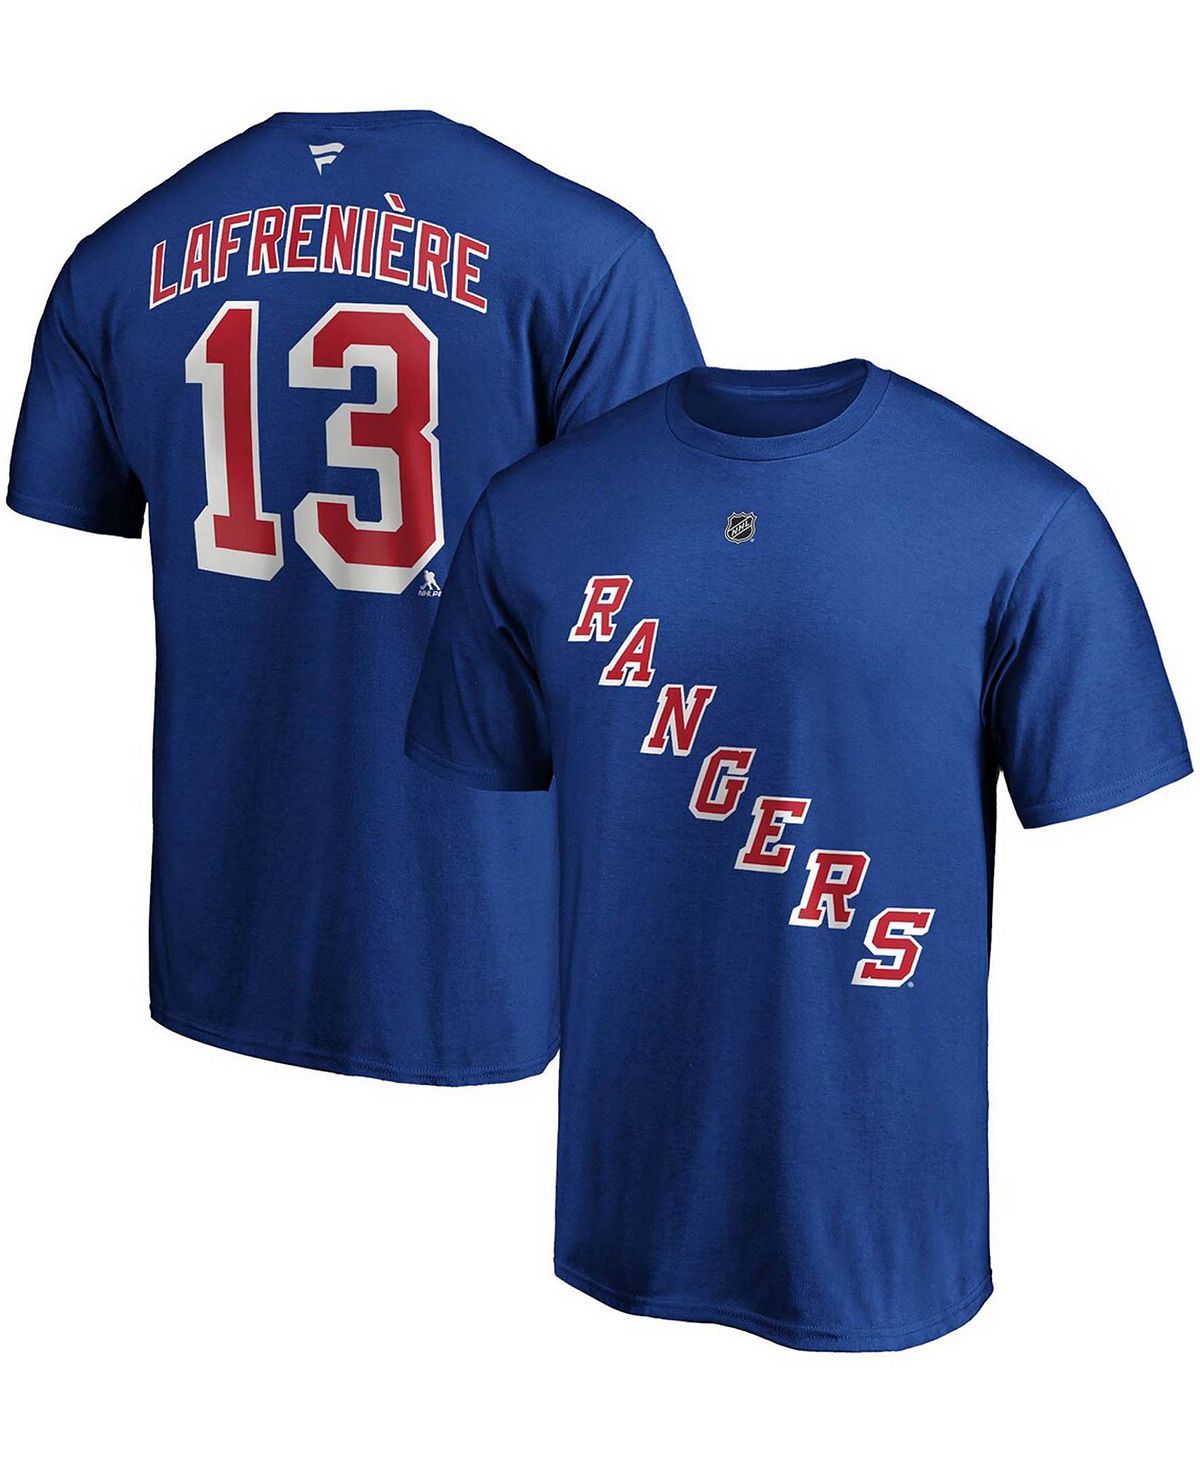 Мужская синяя футболка Big and Tall Alexis Lafreniere New York Rangers с именем и номером Fanatics